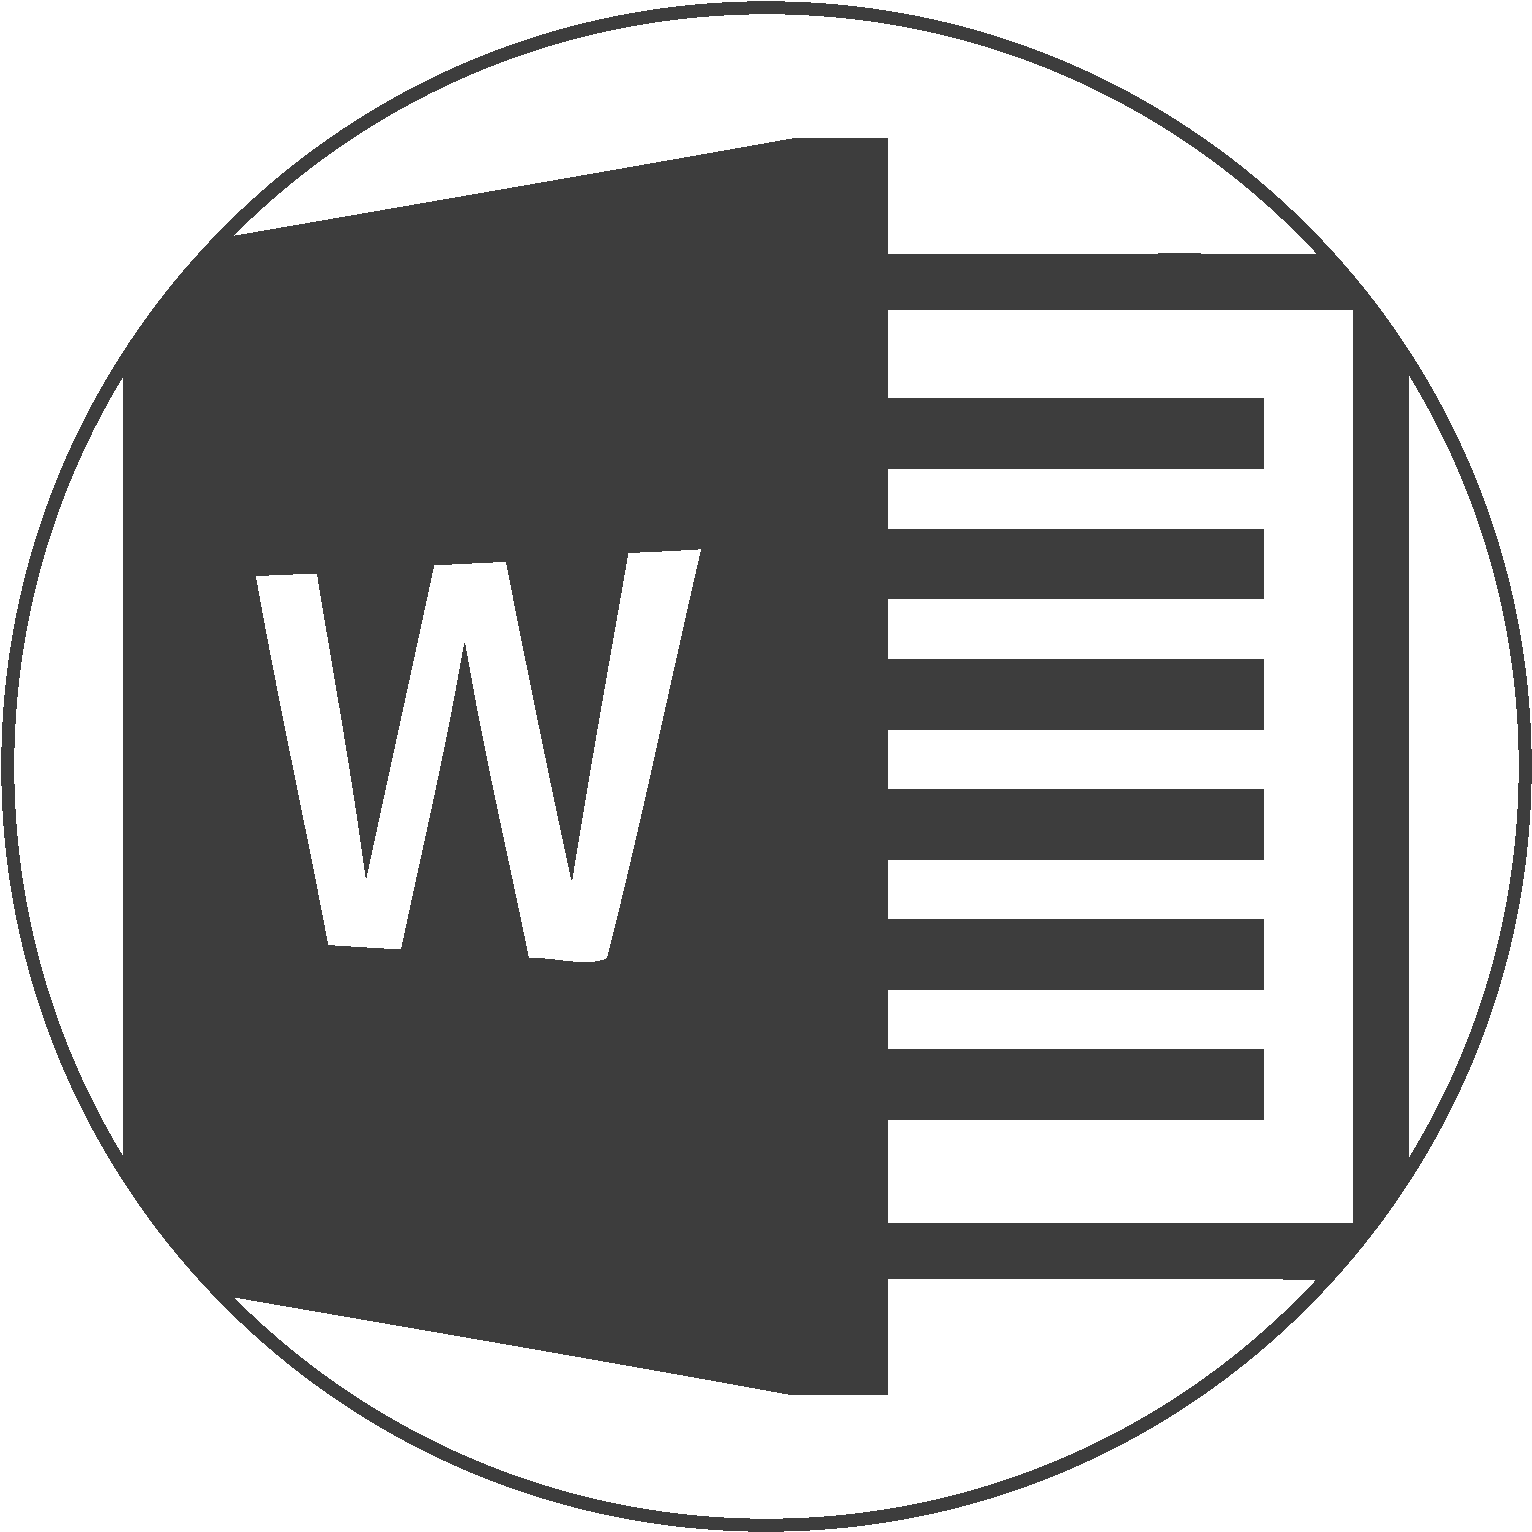 Word icon. Значок Word. Логотип ворд. Microsoft Word логотип. Текстовые редакторы лого.